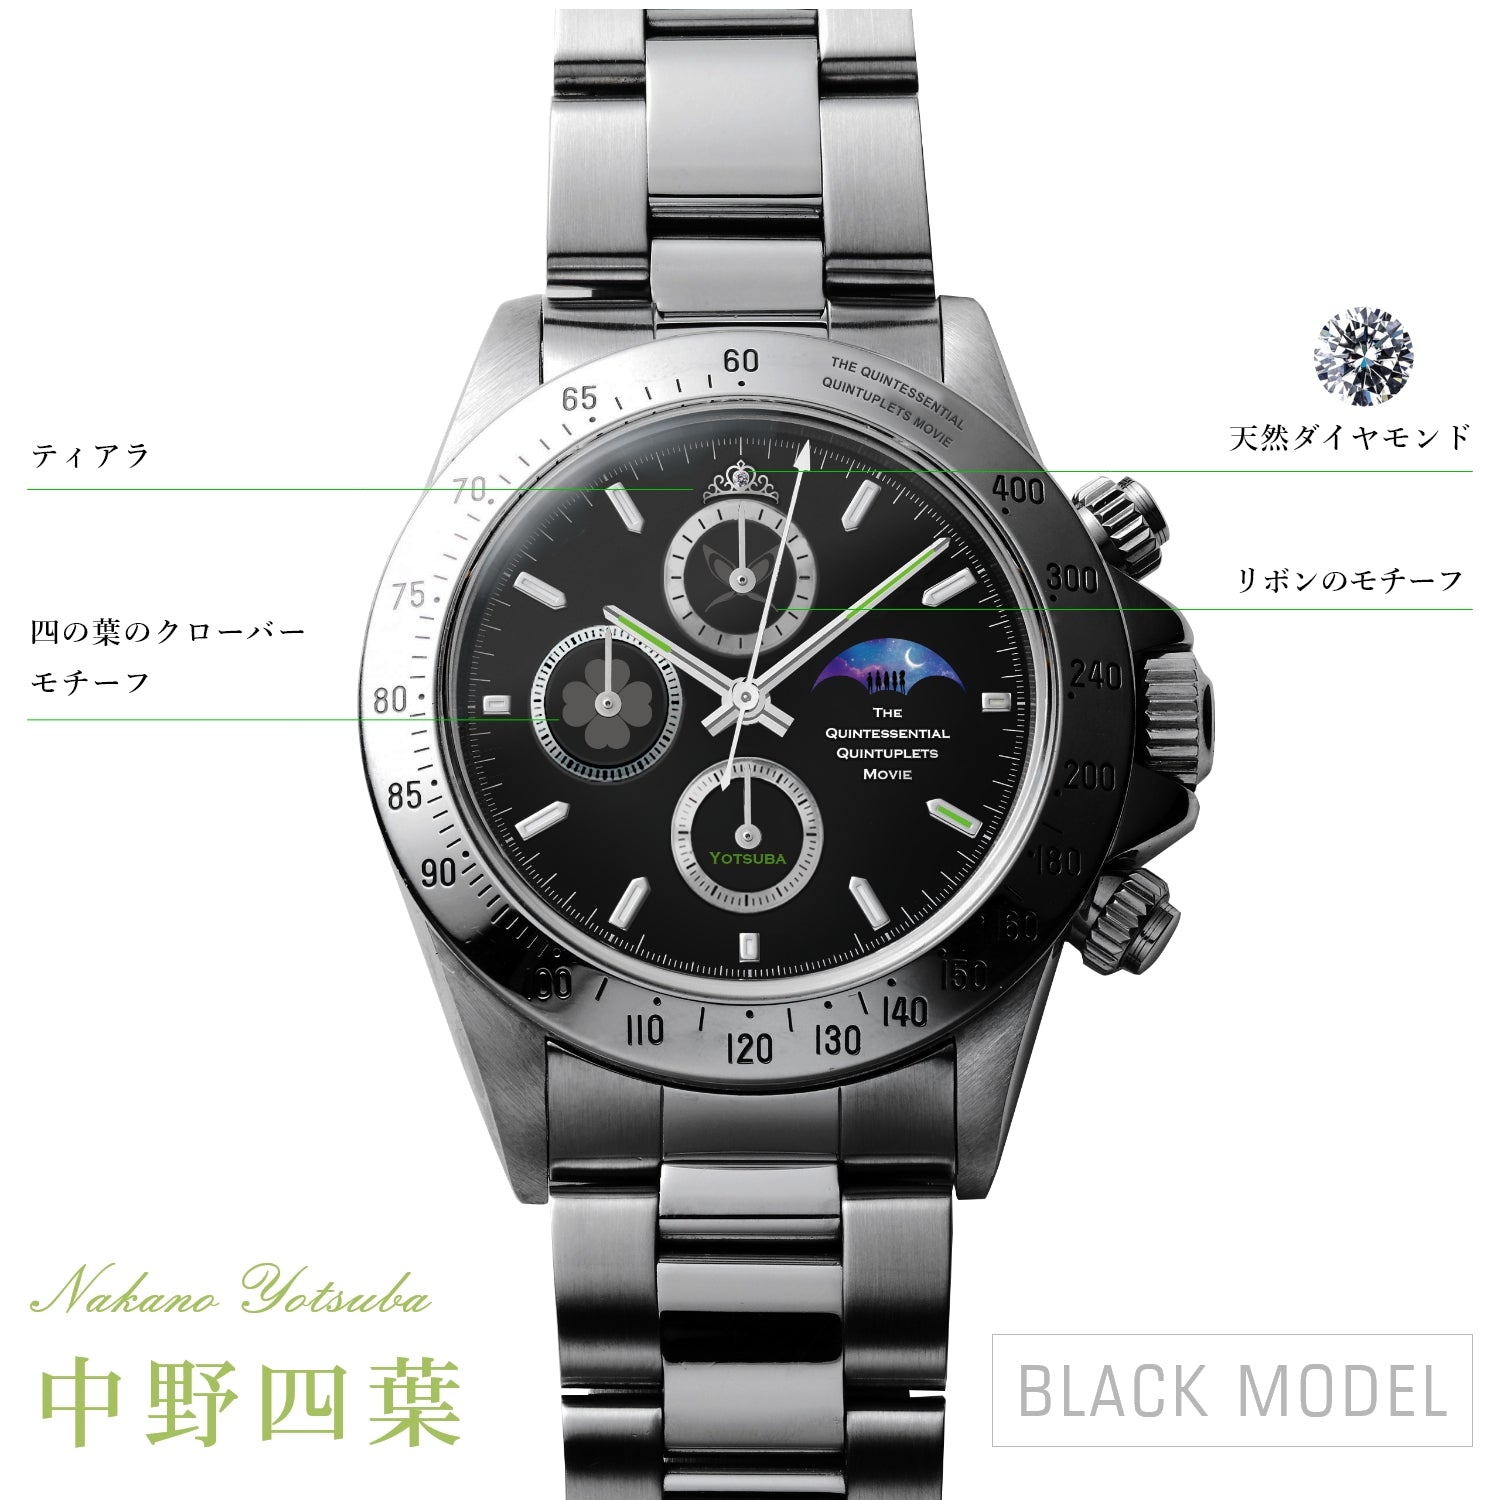 5,599円【19624】映画五等分の花嫁 500本限定 腕時計 中野四葉モデル ブラック